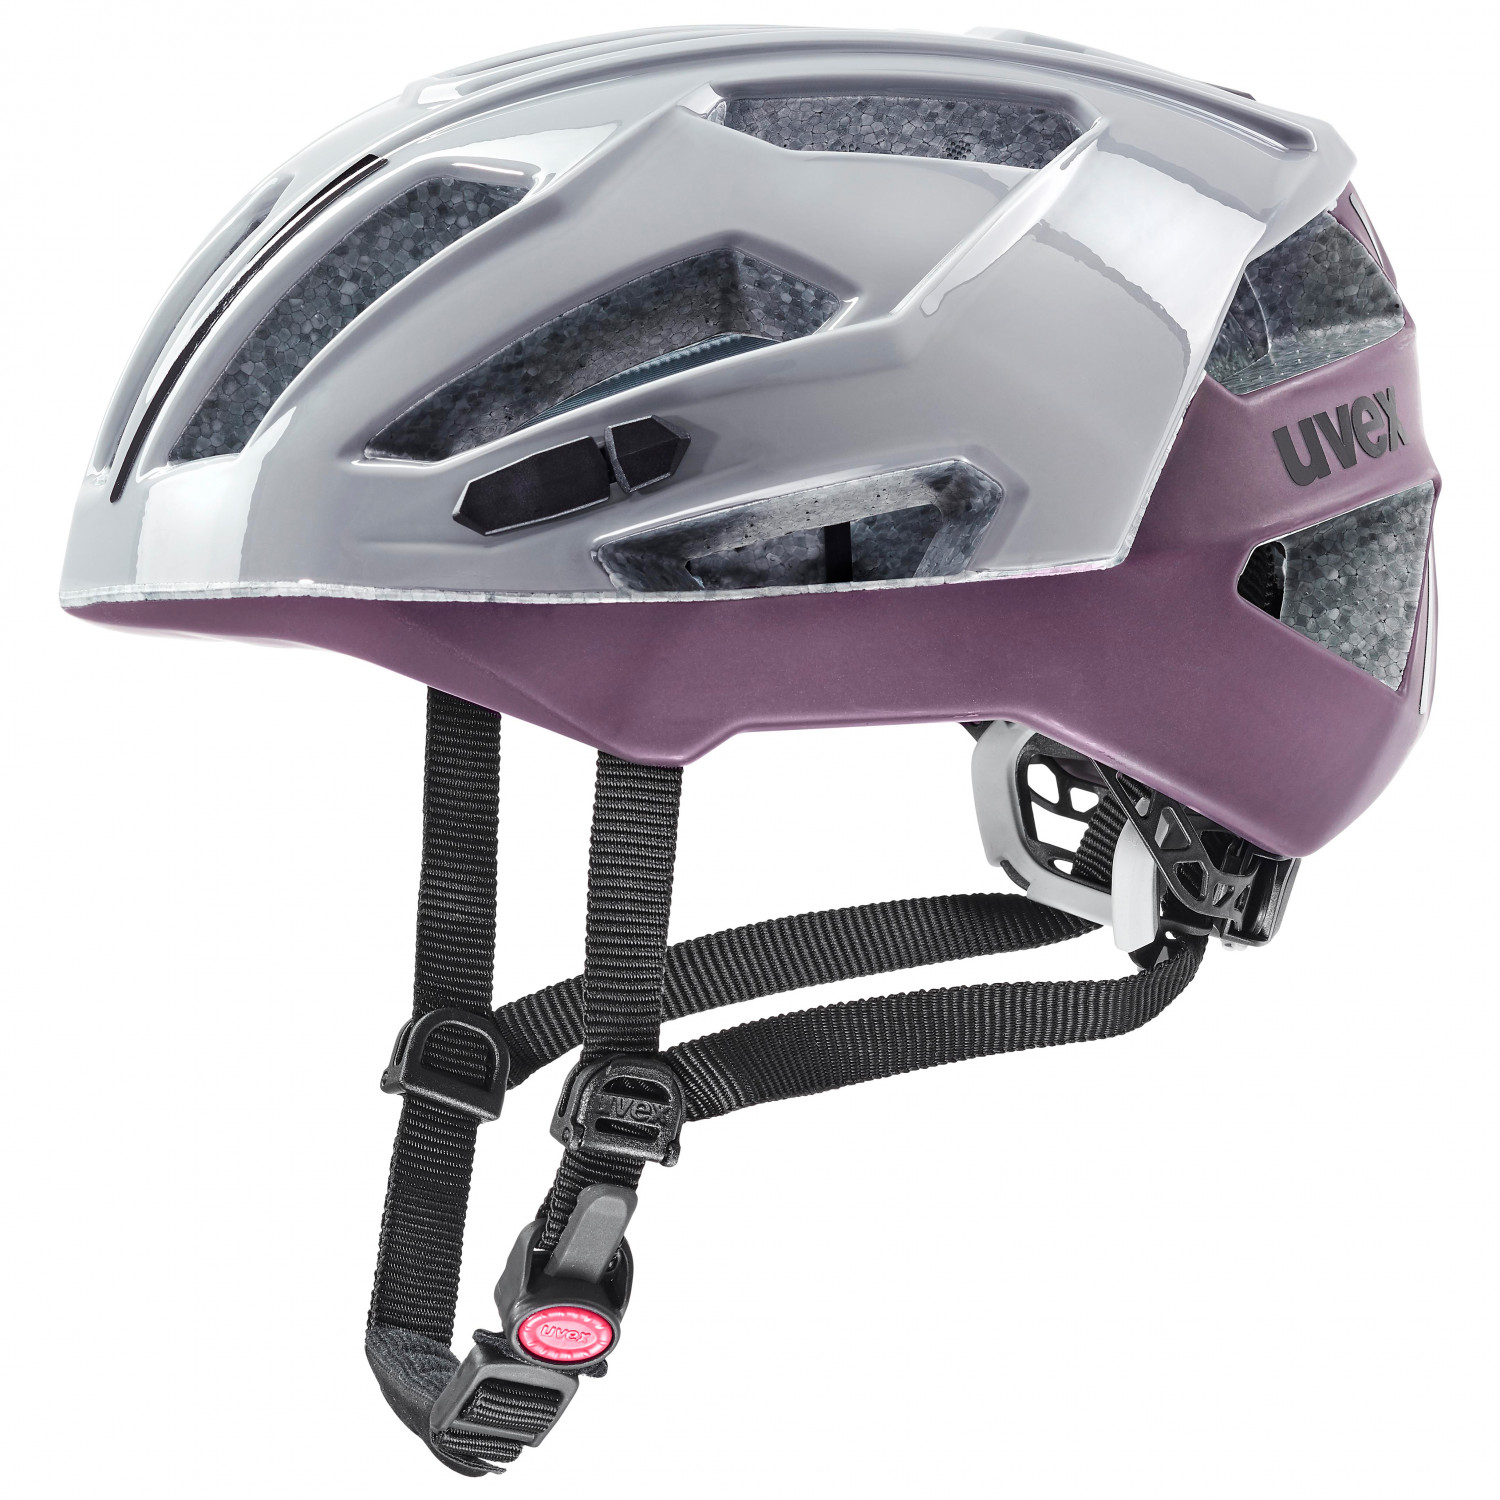 Велосипедный шлем Uvex Gravel X, цвет Rhino/Plum шлем велосипедный детский регулируемый с вентиляционными отверстиями tt 018 rockbros